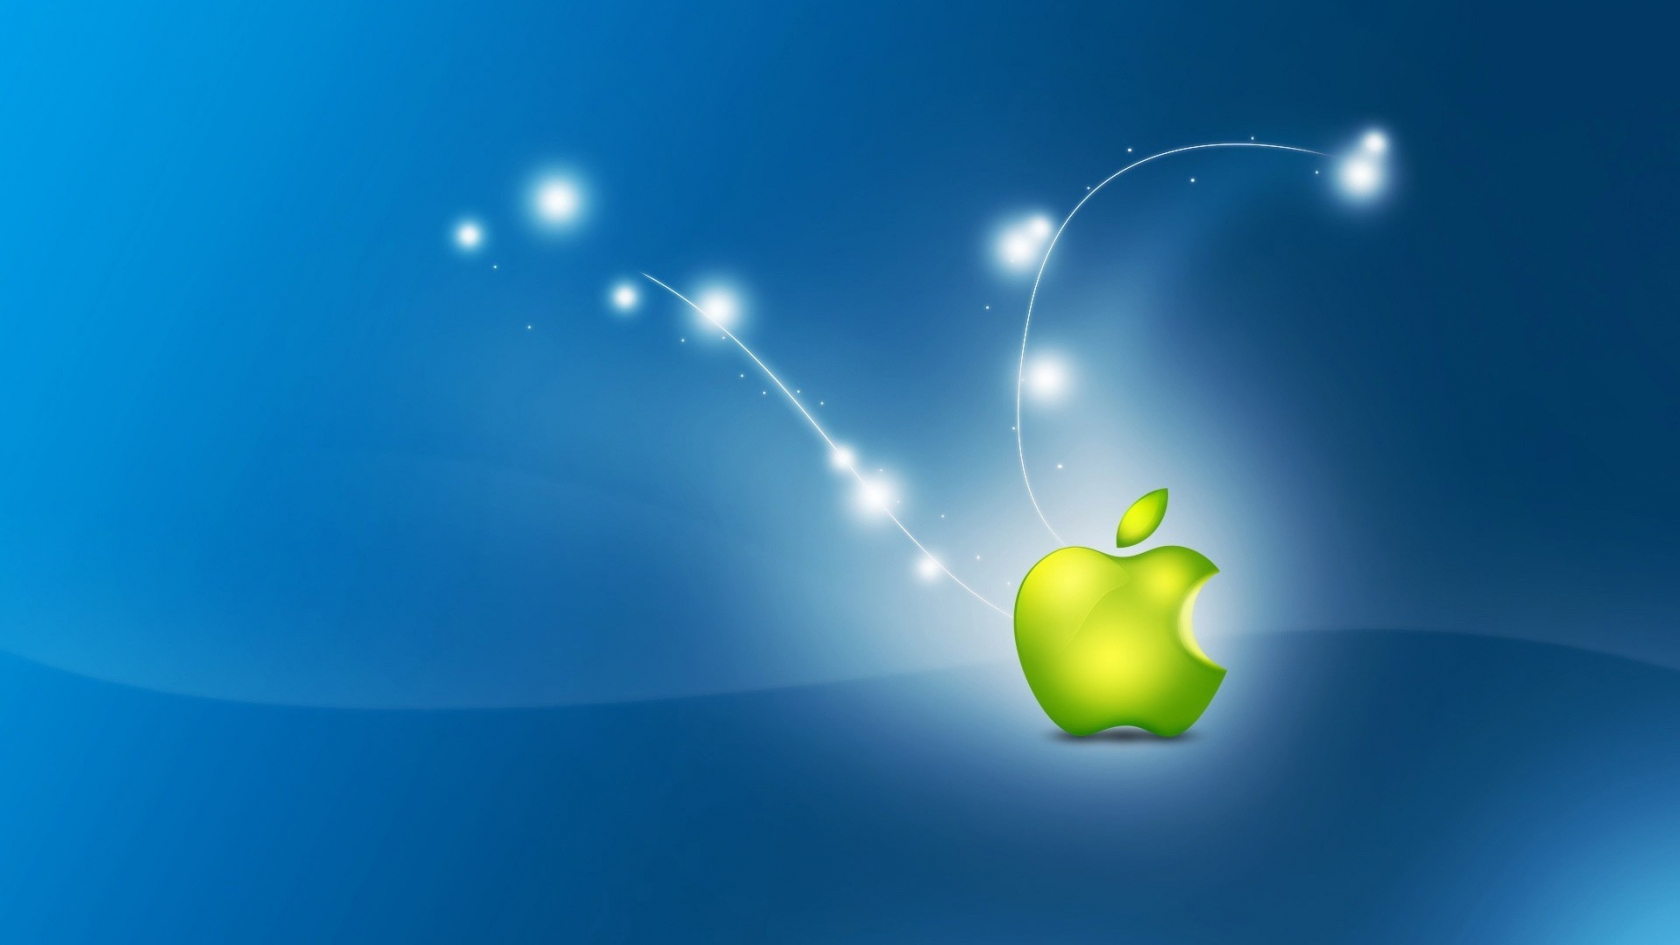 Artistic Apple Logo for 1680 x 945 HDTV resolution